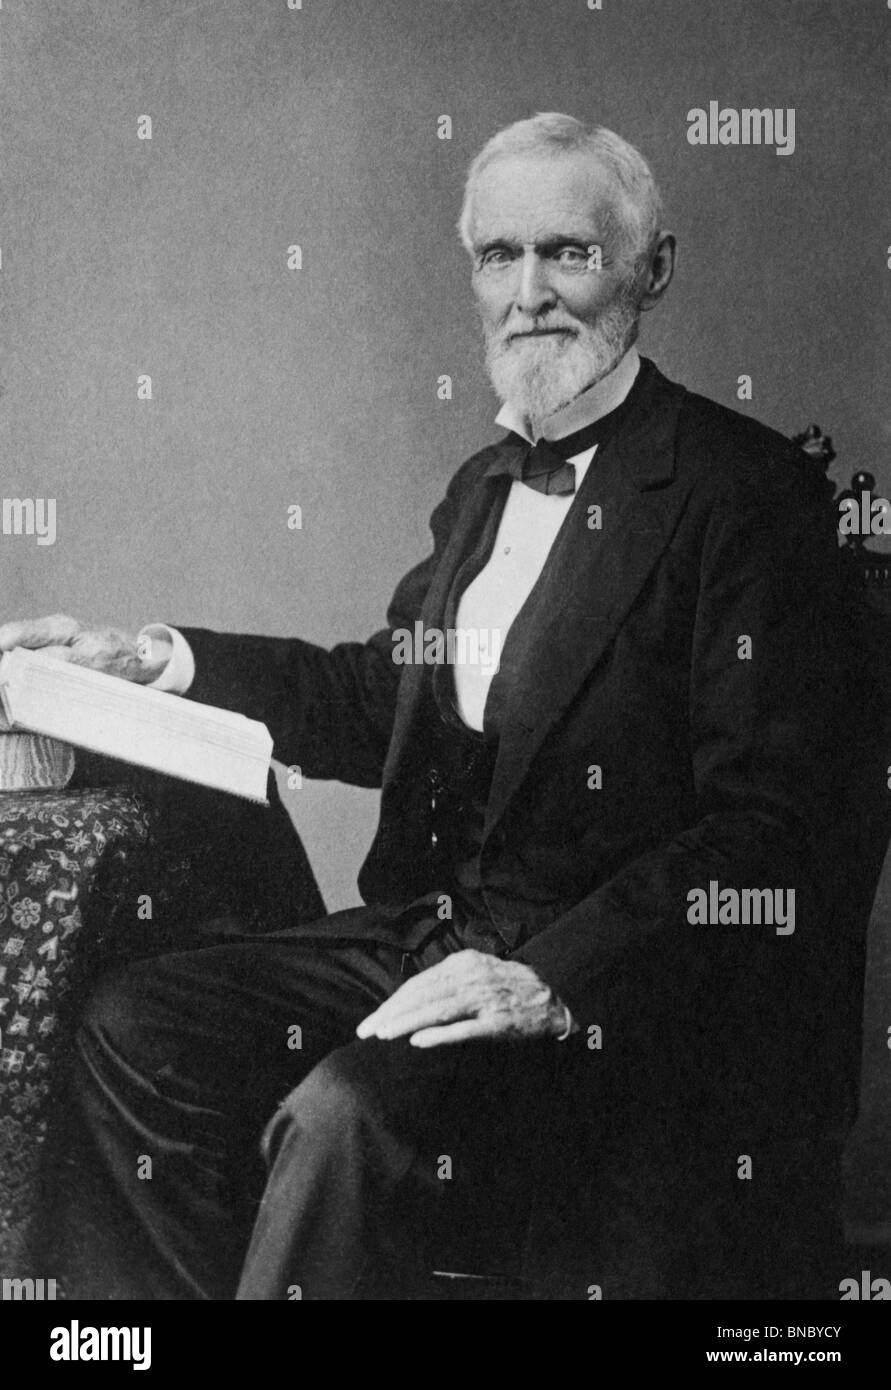 Portrait-Foto ca. 1880 s von Jefferson Davis (1808 – 1889) - Präsident der Konföderierten Staaten von Amerika von 1861 bis 1865. Stockfoto